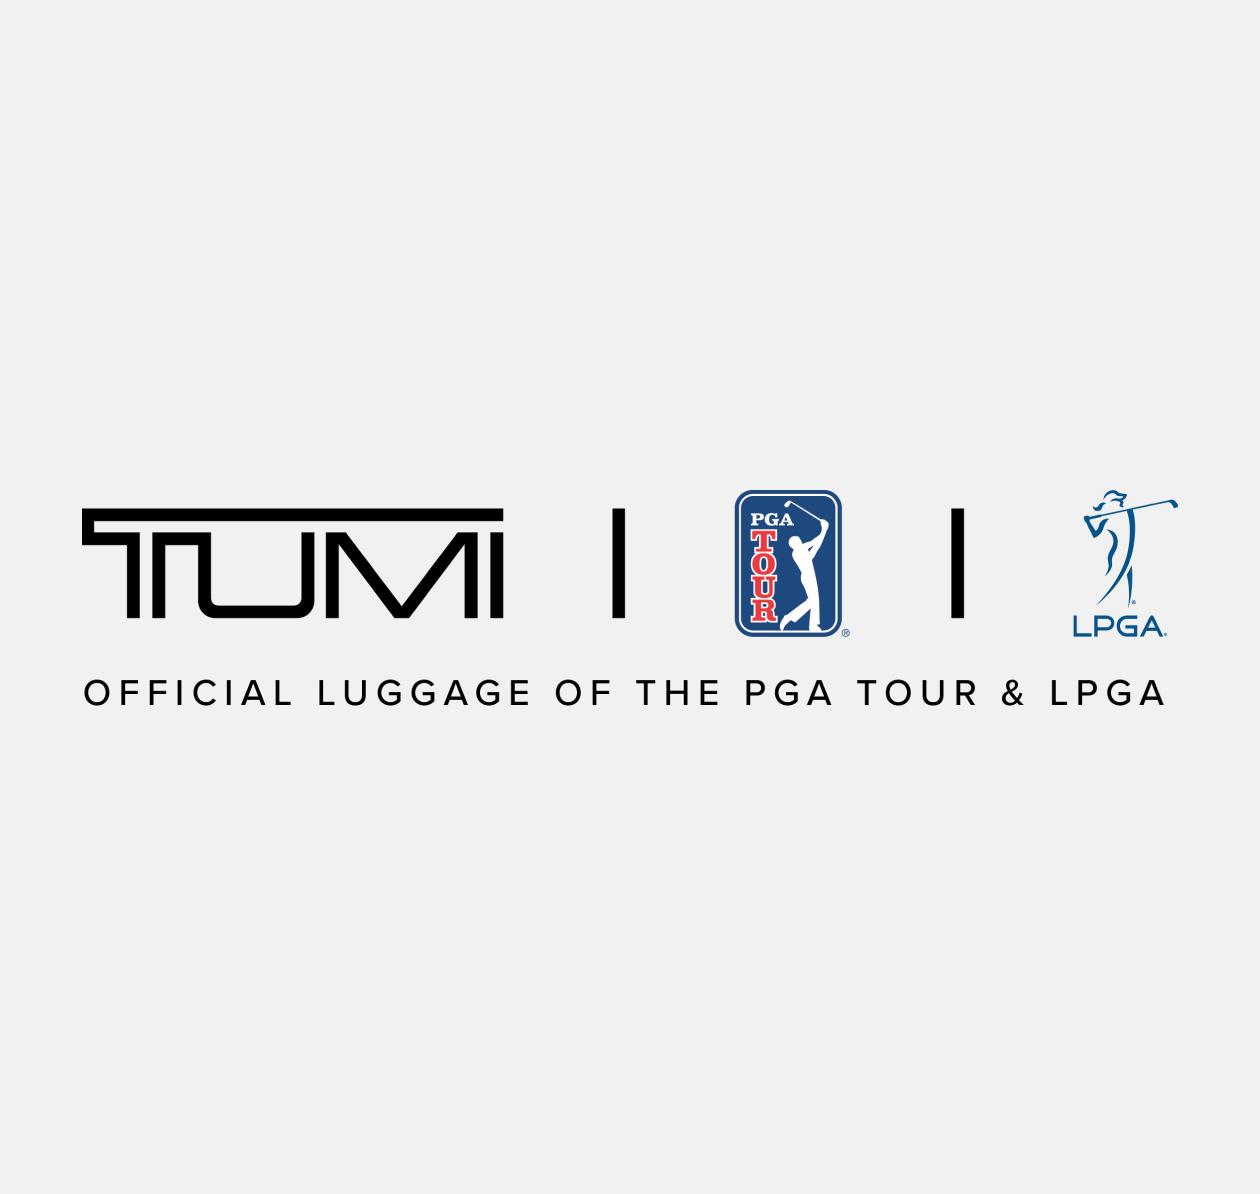 Tumi PGA, LPGA partnership